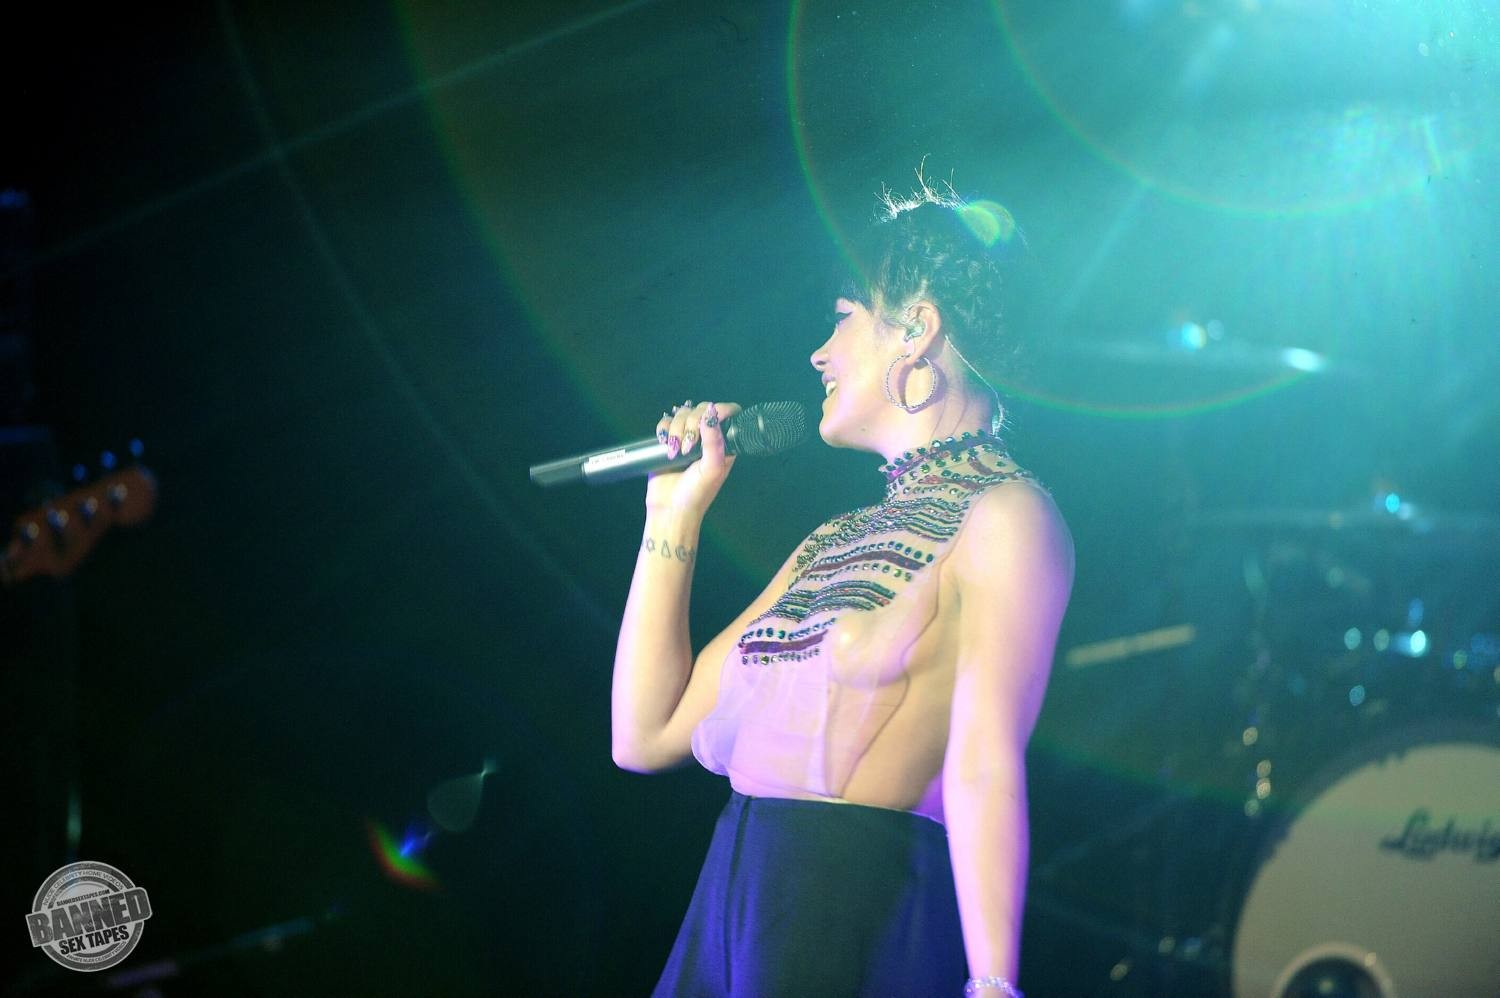 Lily allen montre ses seins nus à travers un haut transparent pendant un concert
 #75191546